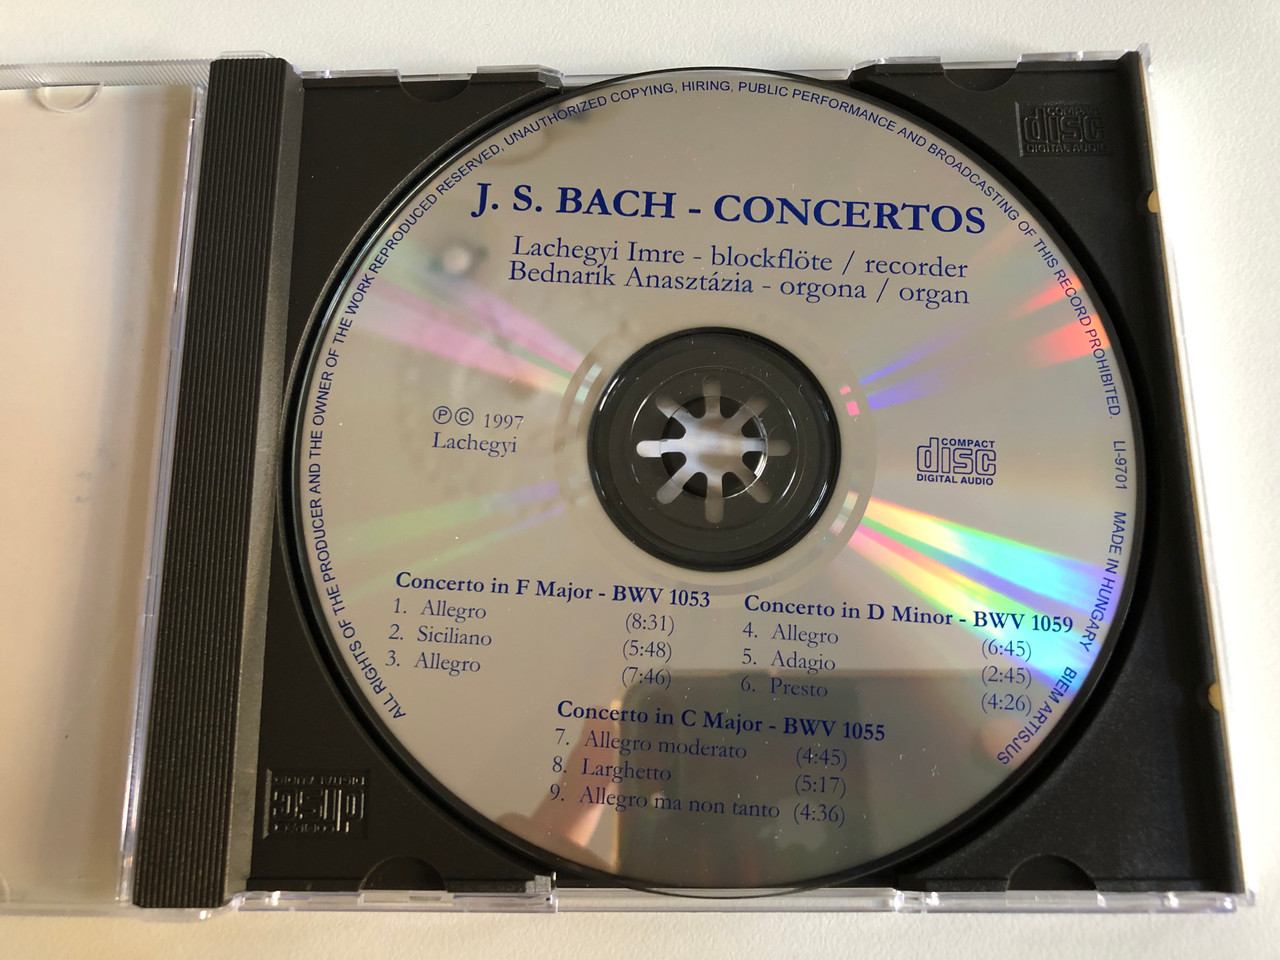 https://cdn10.bigcommerce.com/s-62bdpkt7pb/products/0/images/187726/J._S._Bach_-_Concertos_Lachegyi_Audio_CD_1997_LI-9701_2__06461.1629121970.1280.1280.JPG?c=2&_gl=1*1u57hjc*_ga*MjA2NTIxMjE2MC4xNTkwNTEyNTMy*_ga_WS2VZYPC6G*MTYyOTExNTU4Mi4zMy4xLjE2MjkxMjIxODkuNjA.